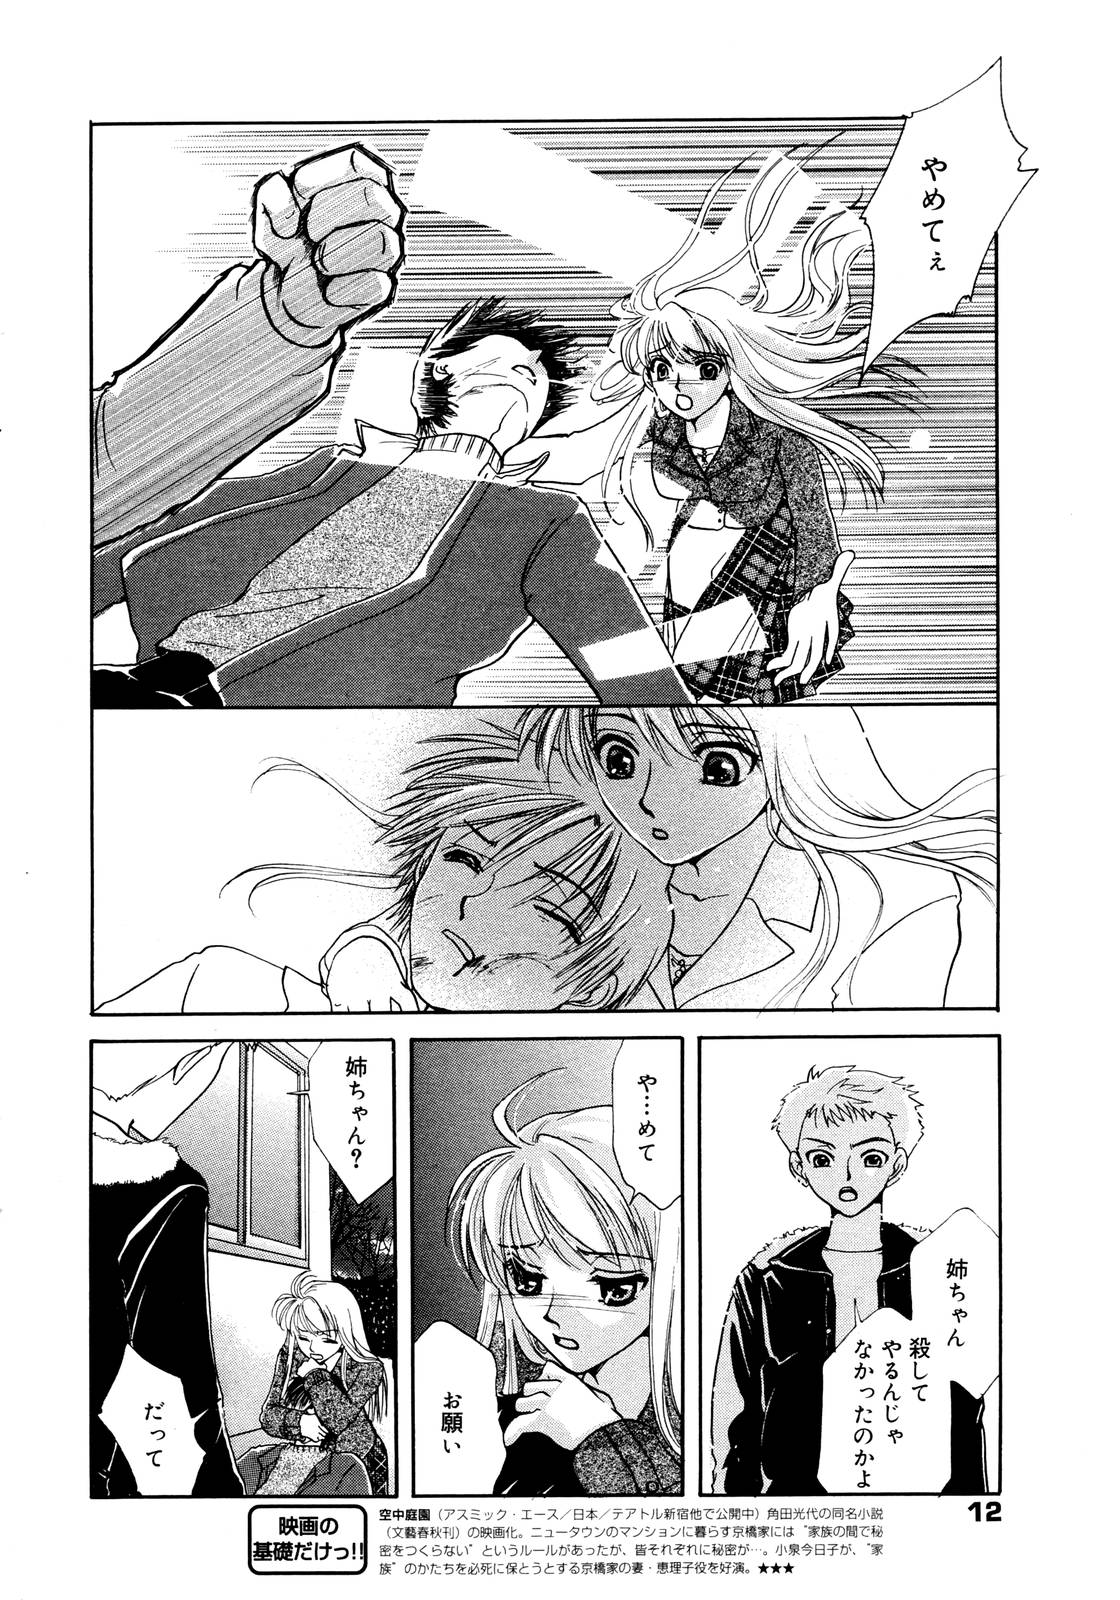 Manga Bangaichi 2006-01 page 12 full